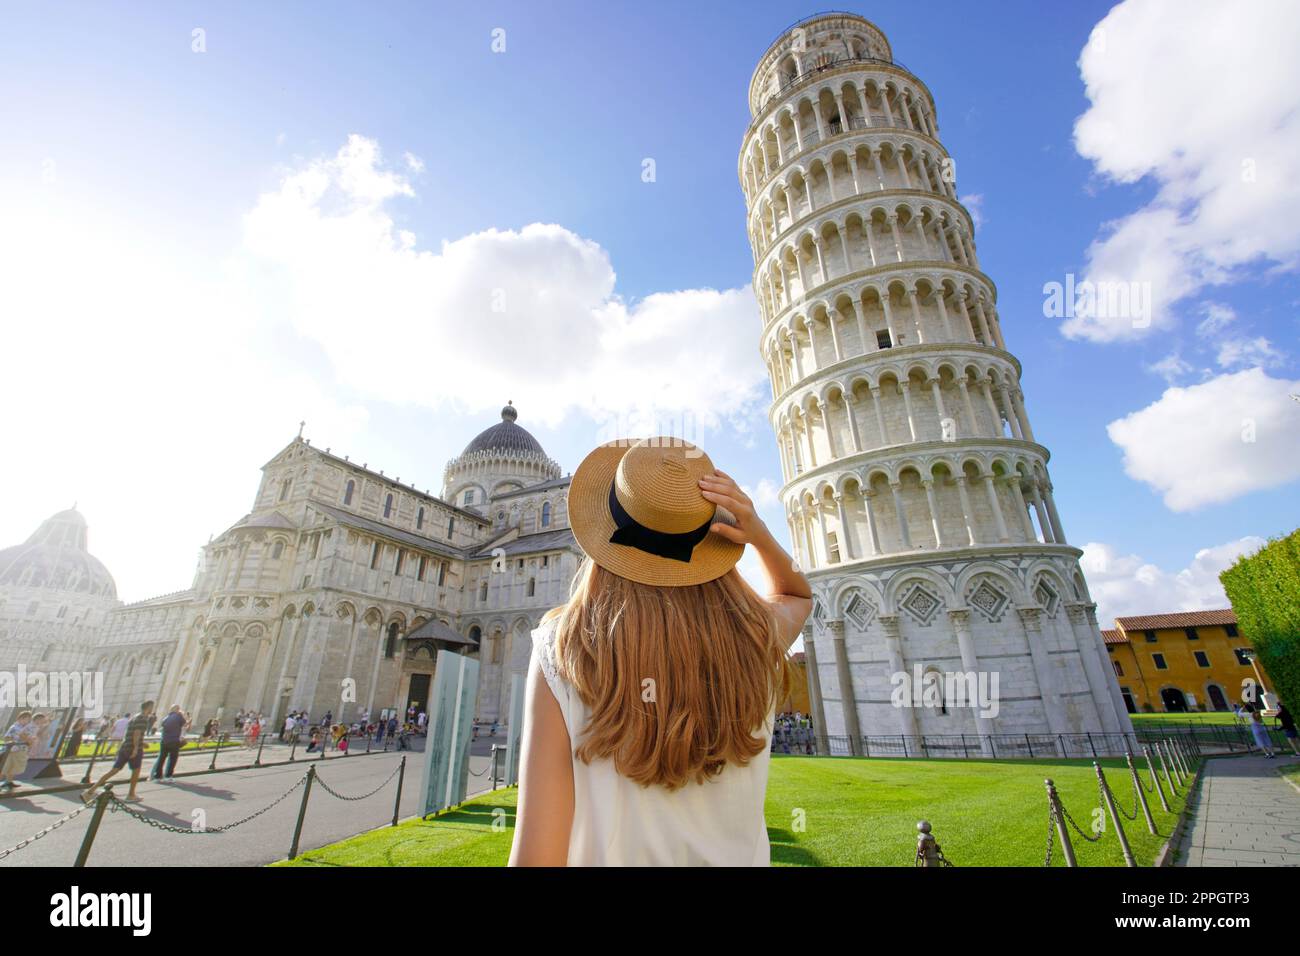 Besuch des Schiefen Turms von Pisa, dem berühmten Wahrzeichen Italiens. Junge Frau auf der Piazza del Duomo in Pisa, Toskana, Italien. Stockfoto